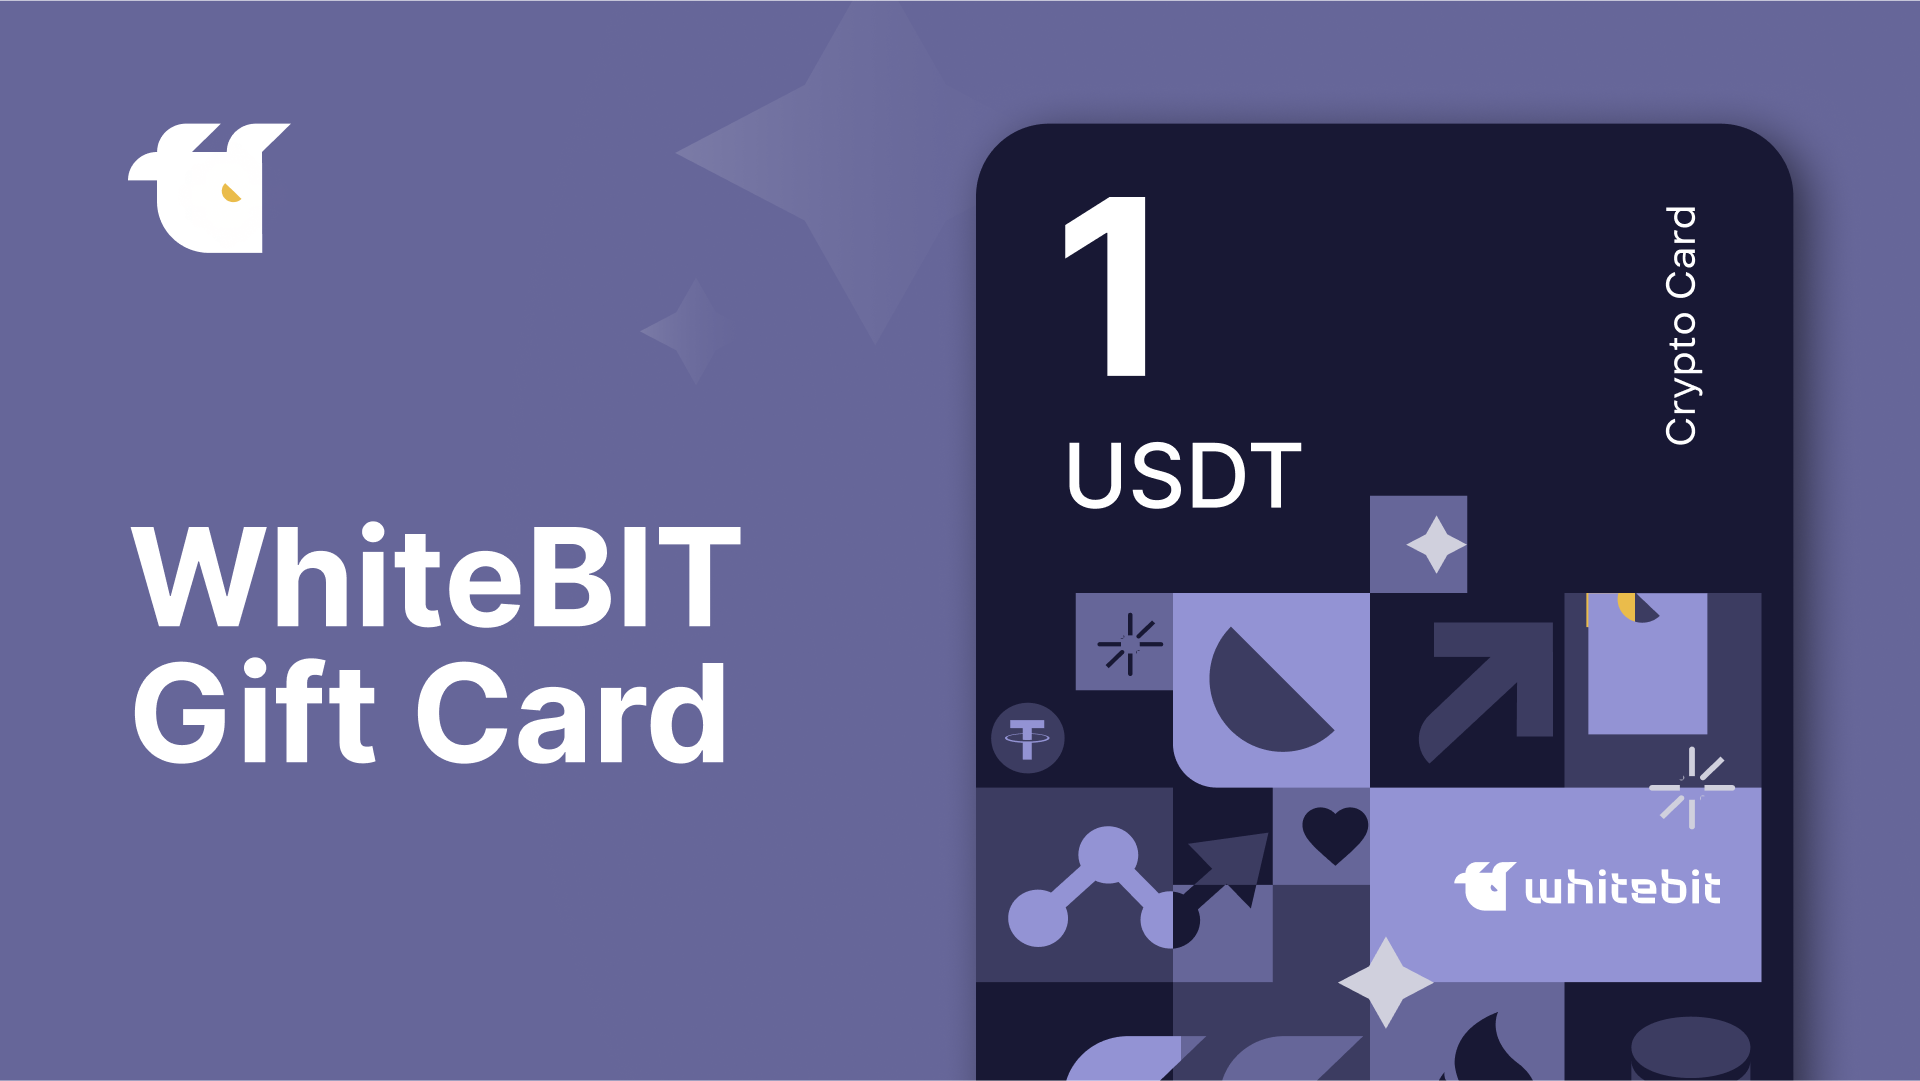 [$ 1.33] WhiteBIT 1 USDT Gift Card